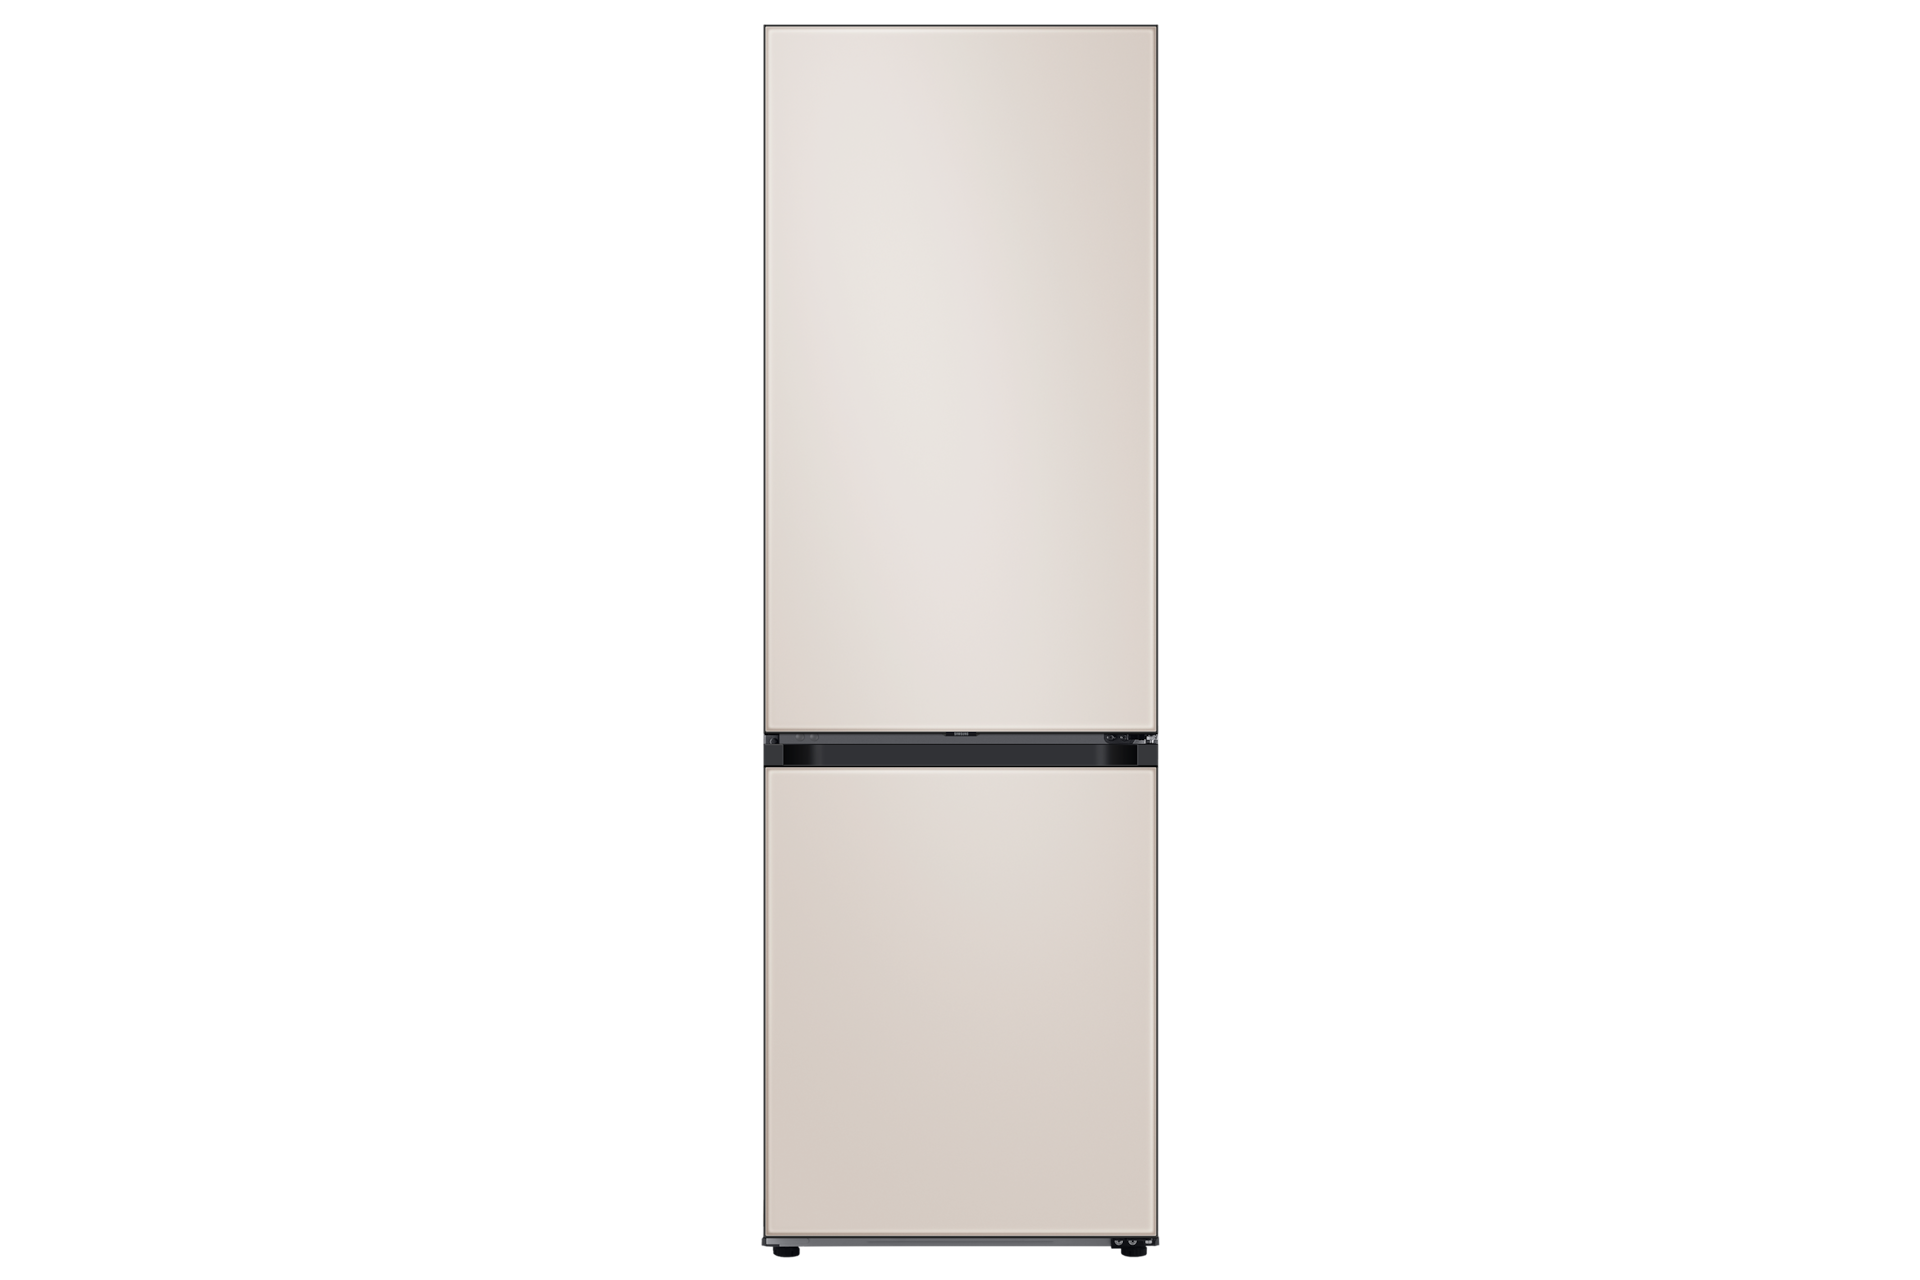 SAMSUNG - Réfrigérateur-congélateur RB7300 Bespo…